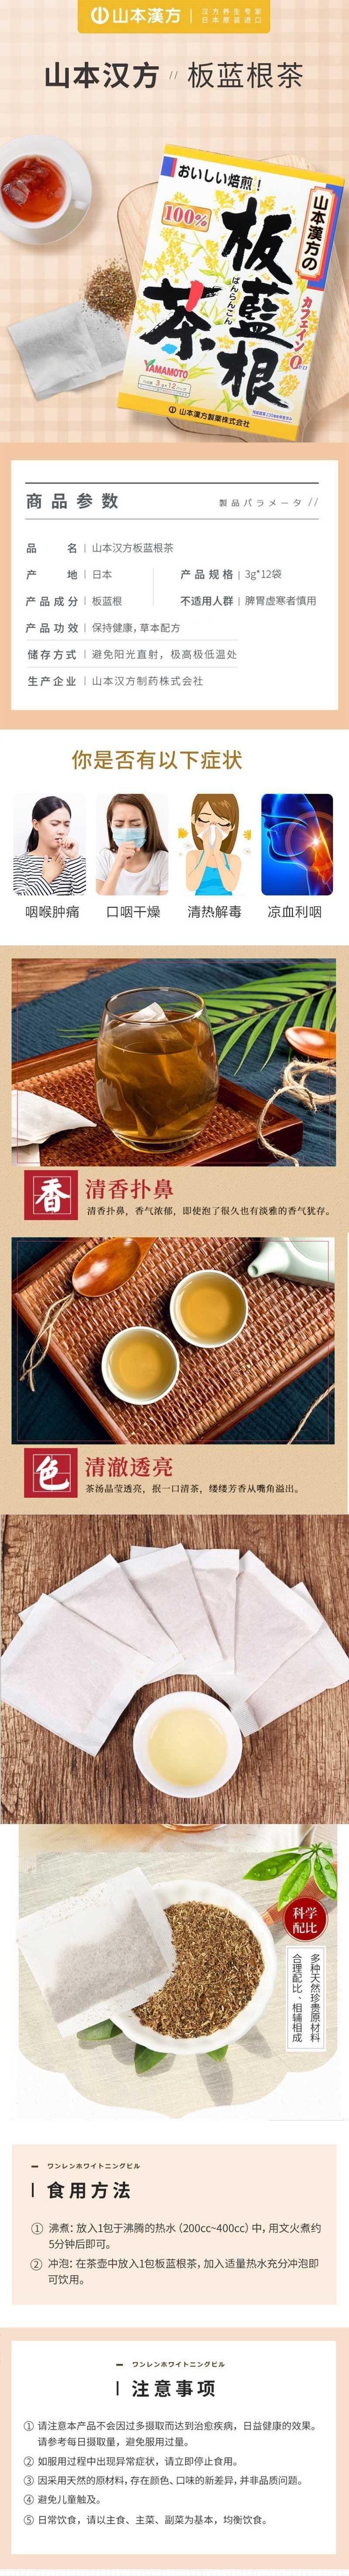 【日本直邮】YAMAMOTO山本汉方制药 100%清热利咽板蓝根茶 12袋